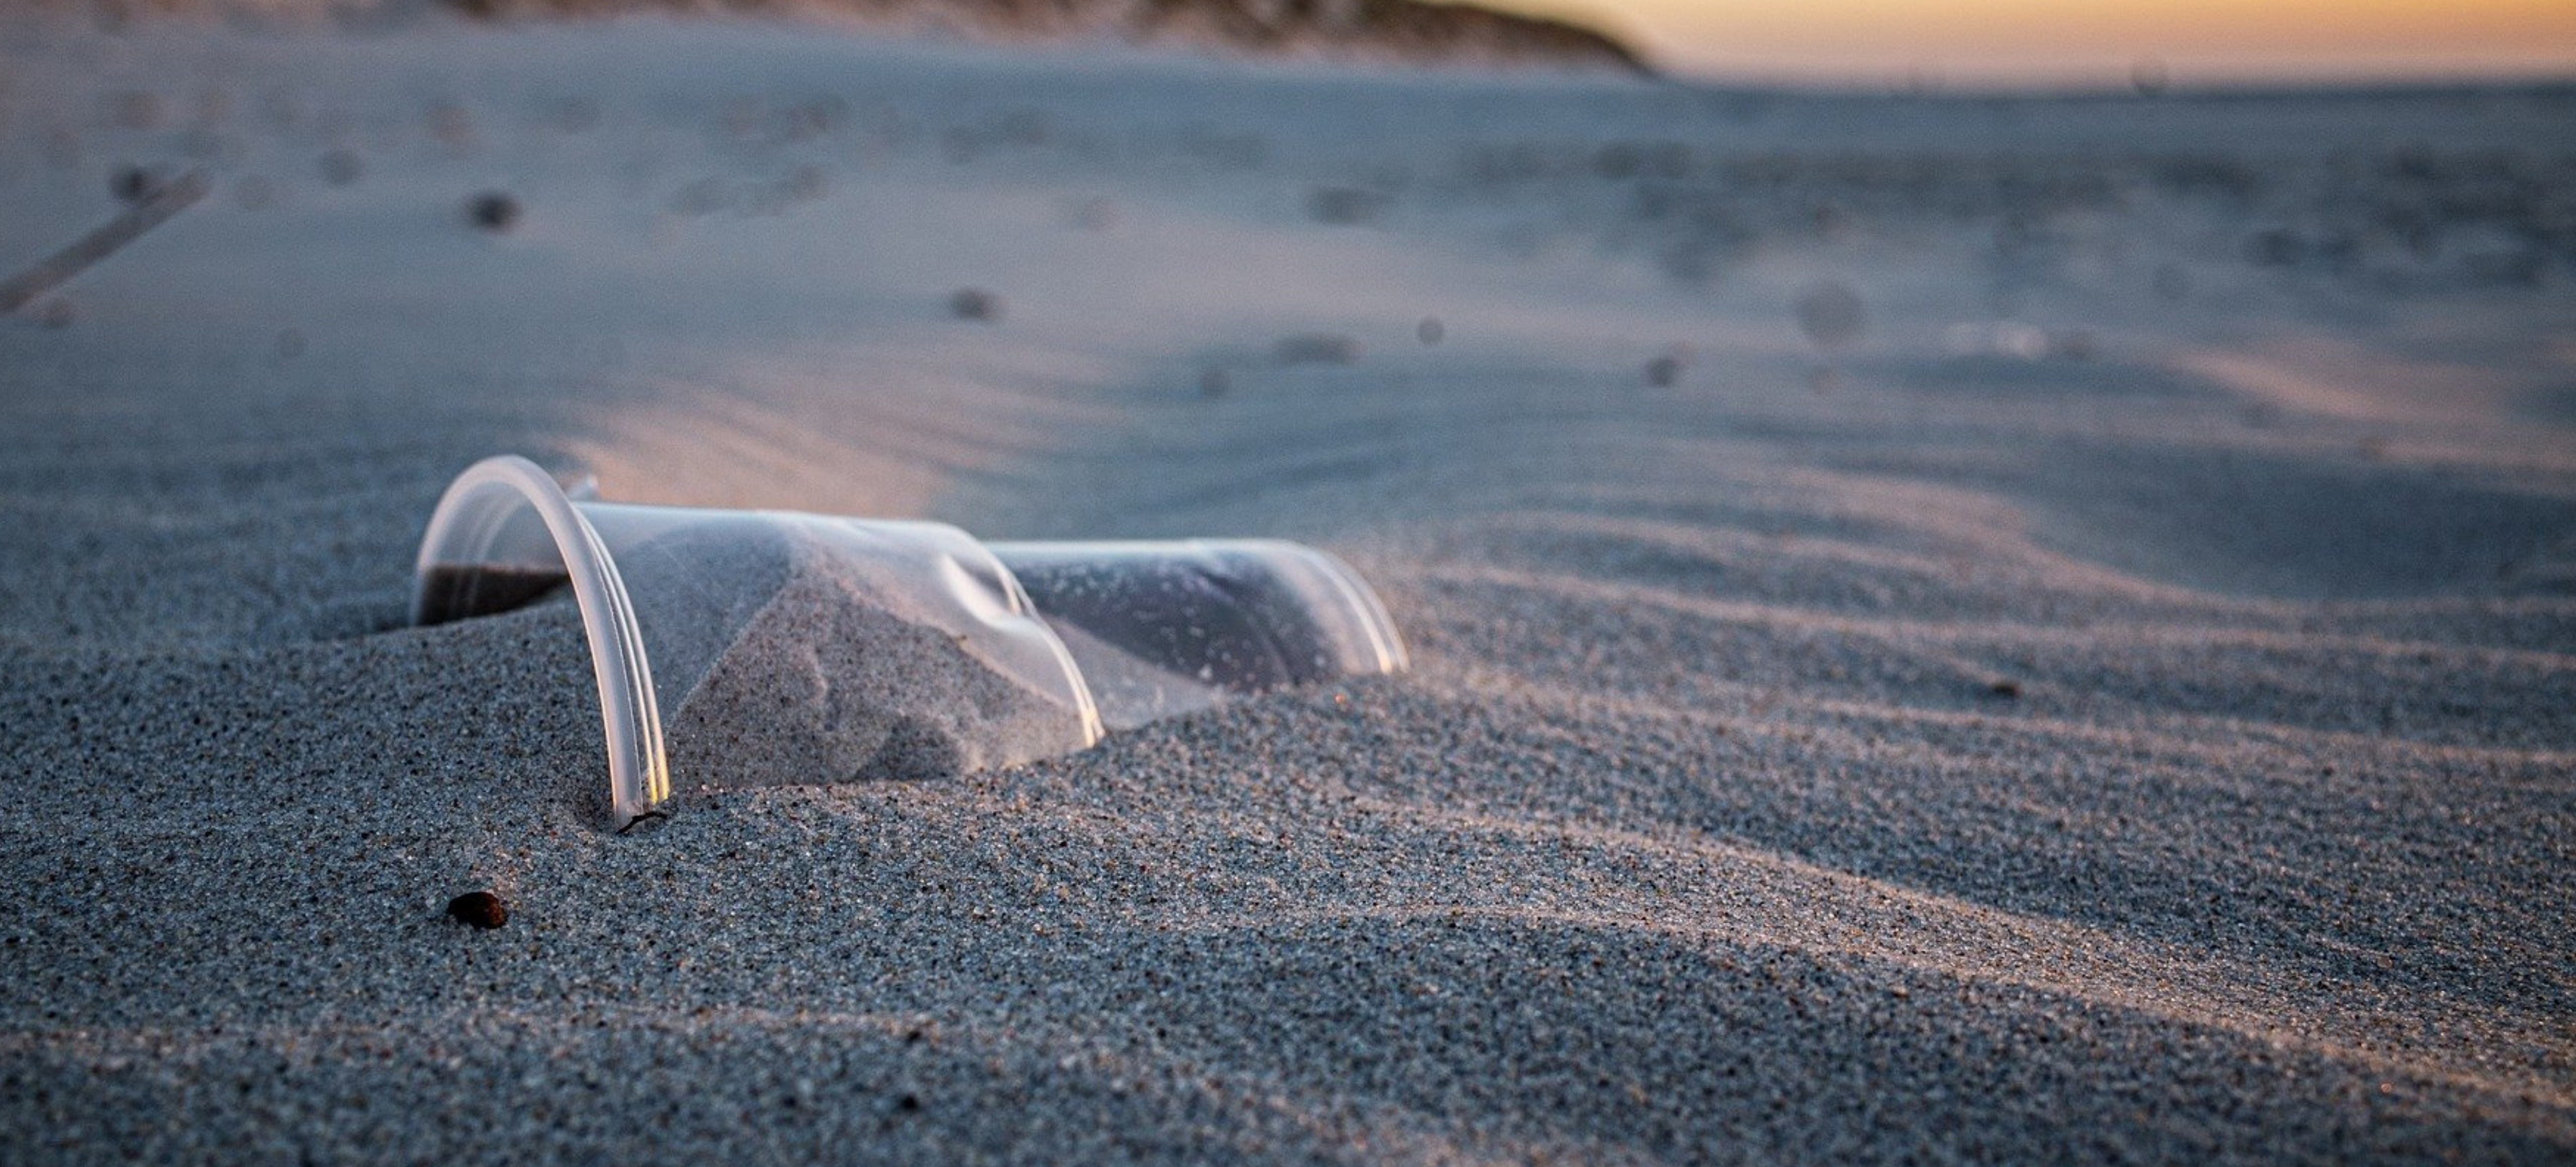 Déchets plastiques sur les plages